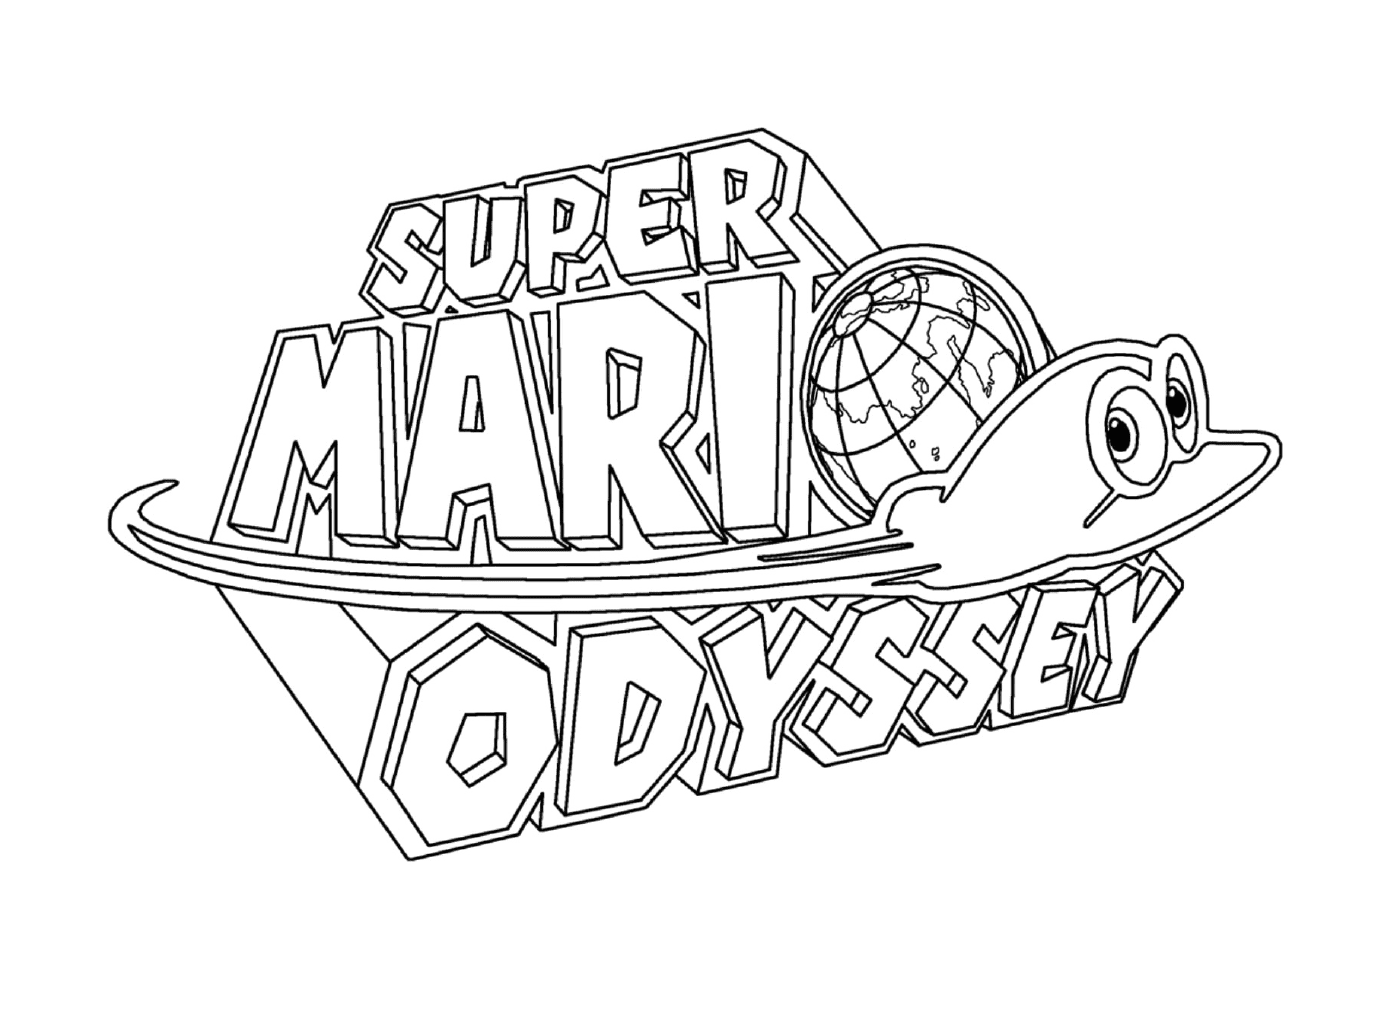  El logo de Super Mario Odyssey de Nintendo 